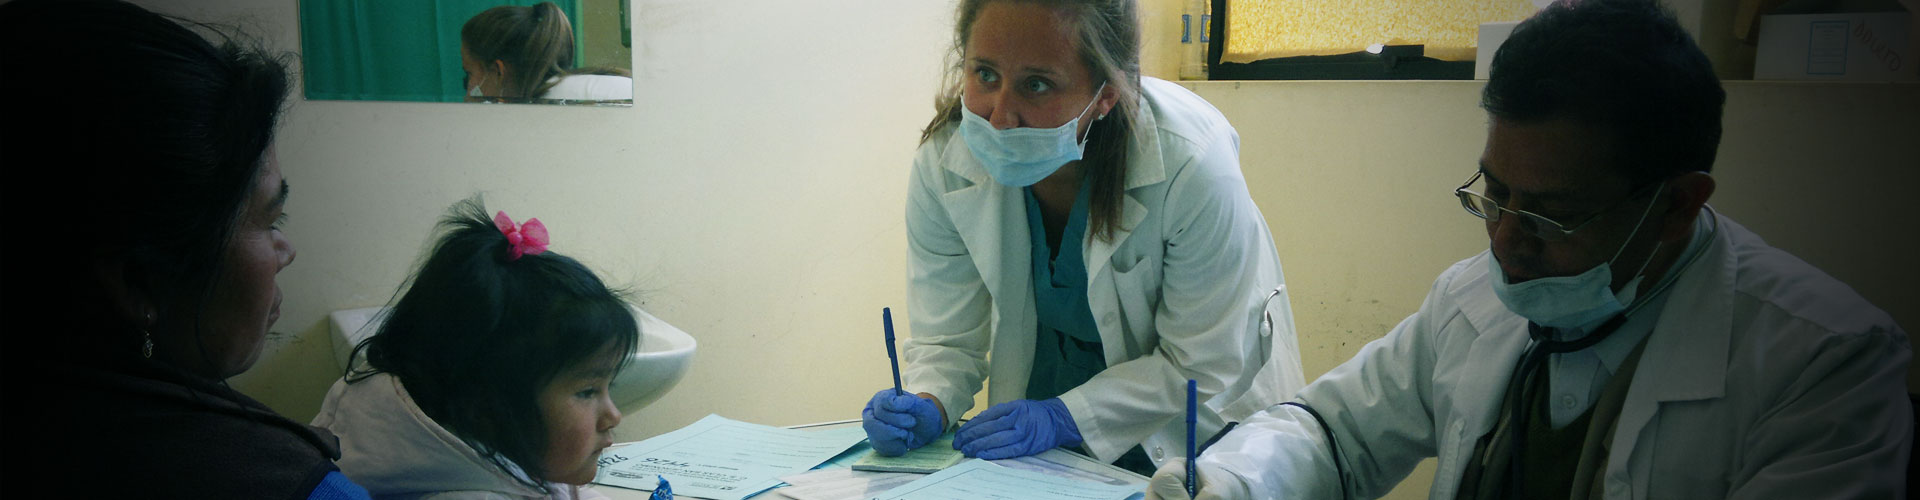 Programma di volontariato medico in Perù - Cusco